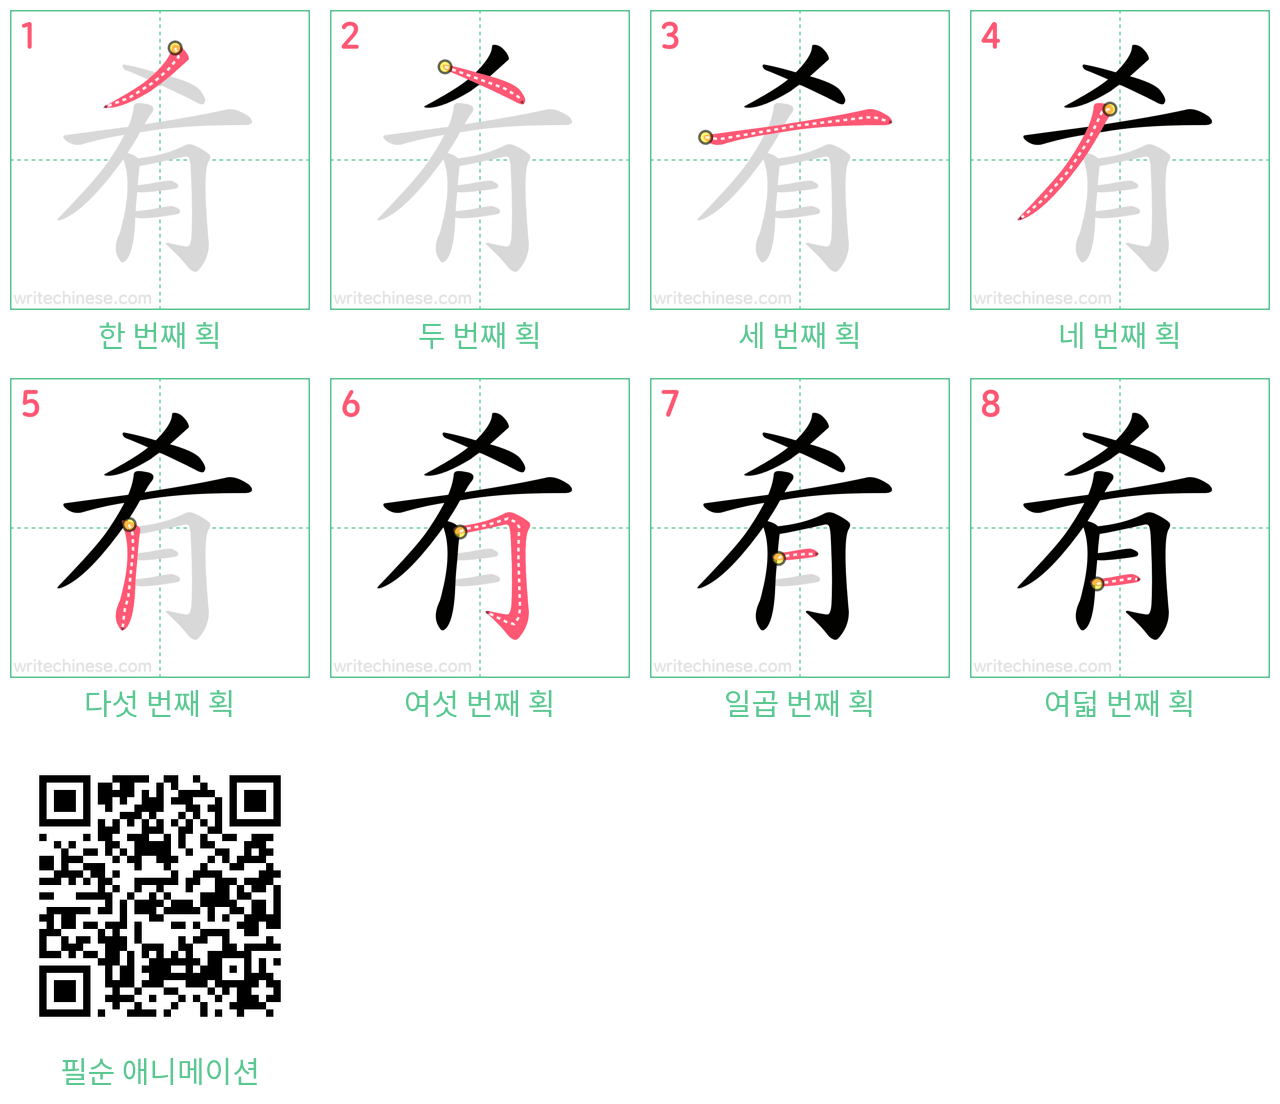 肴 step-by-step stroke order diagrams